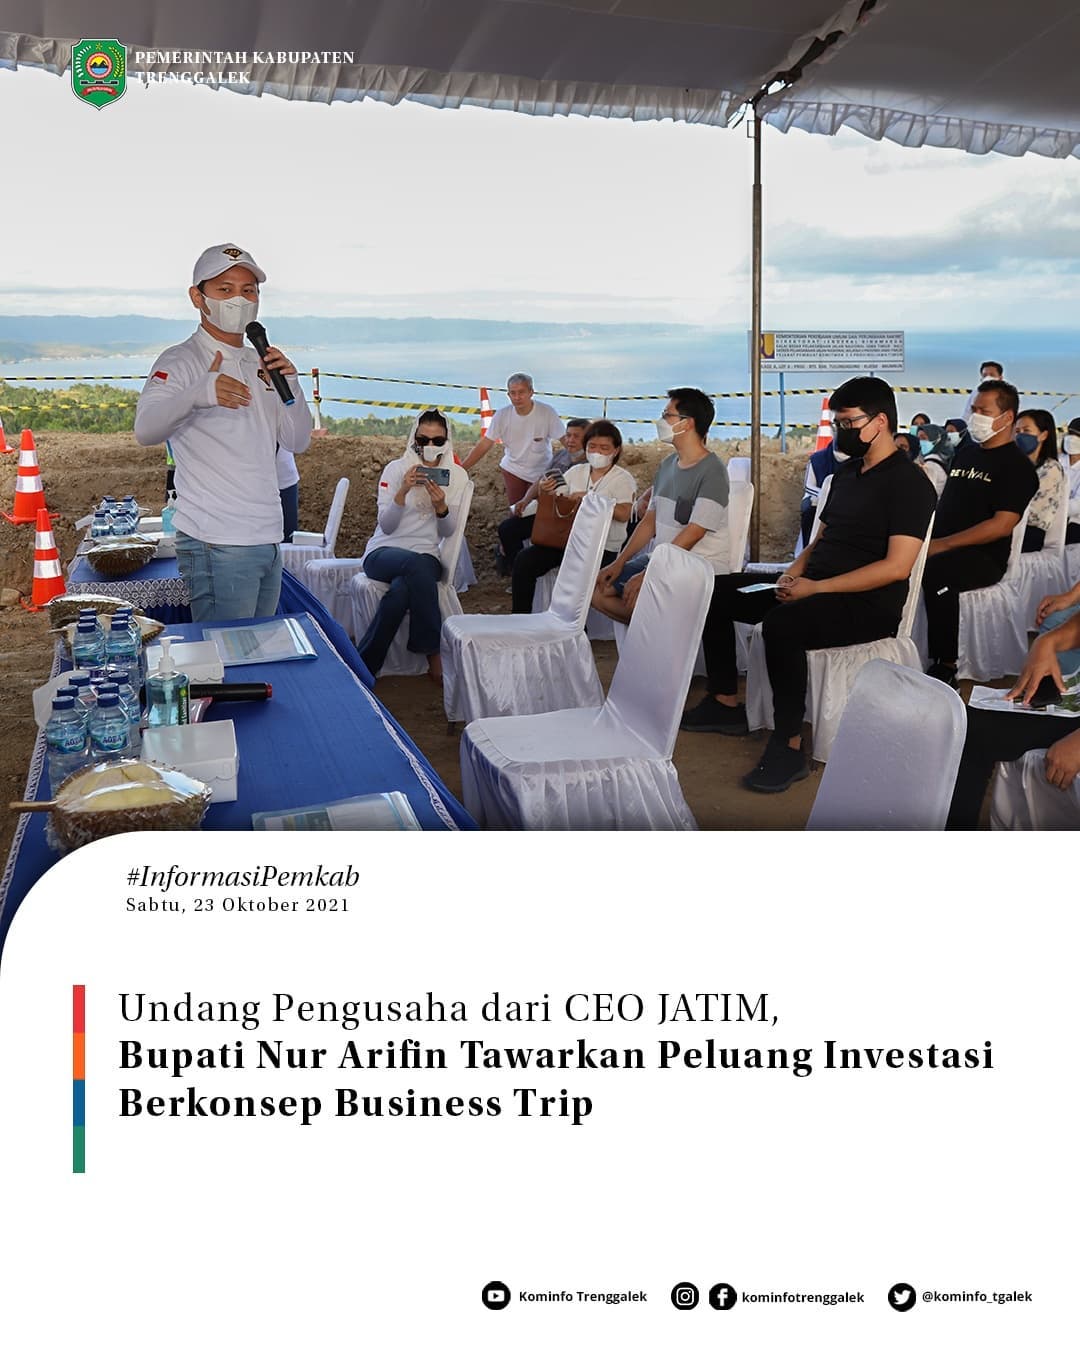 Undang Pengusaha dari CEO JATIM, Bupati Nur Arifin Tawarkan Peluang Investasi Berkonsep Business Trip